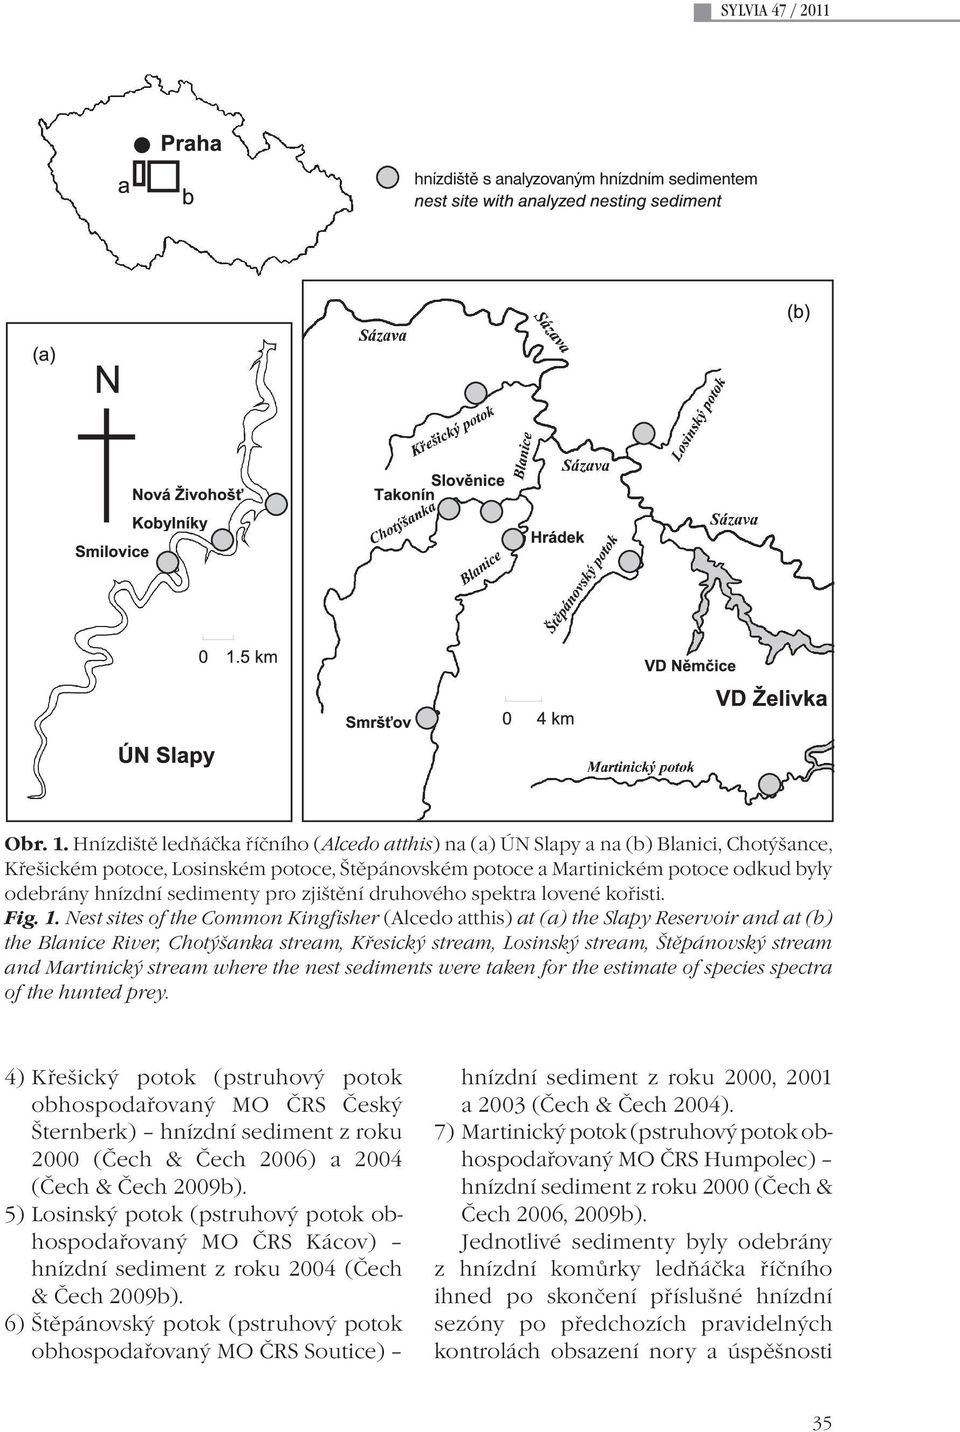 sedimenty pro zjištění druhového spektra lovené kořisti. Fig. 1.